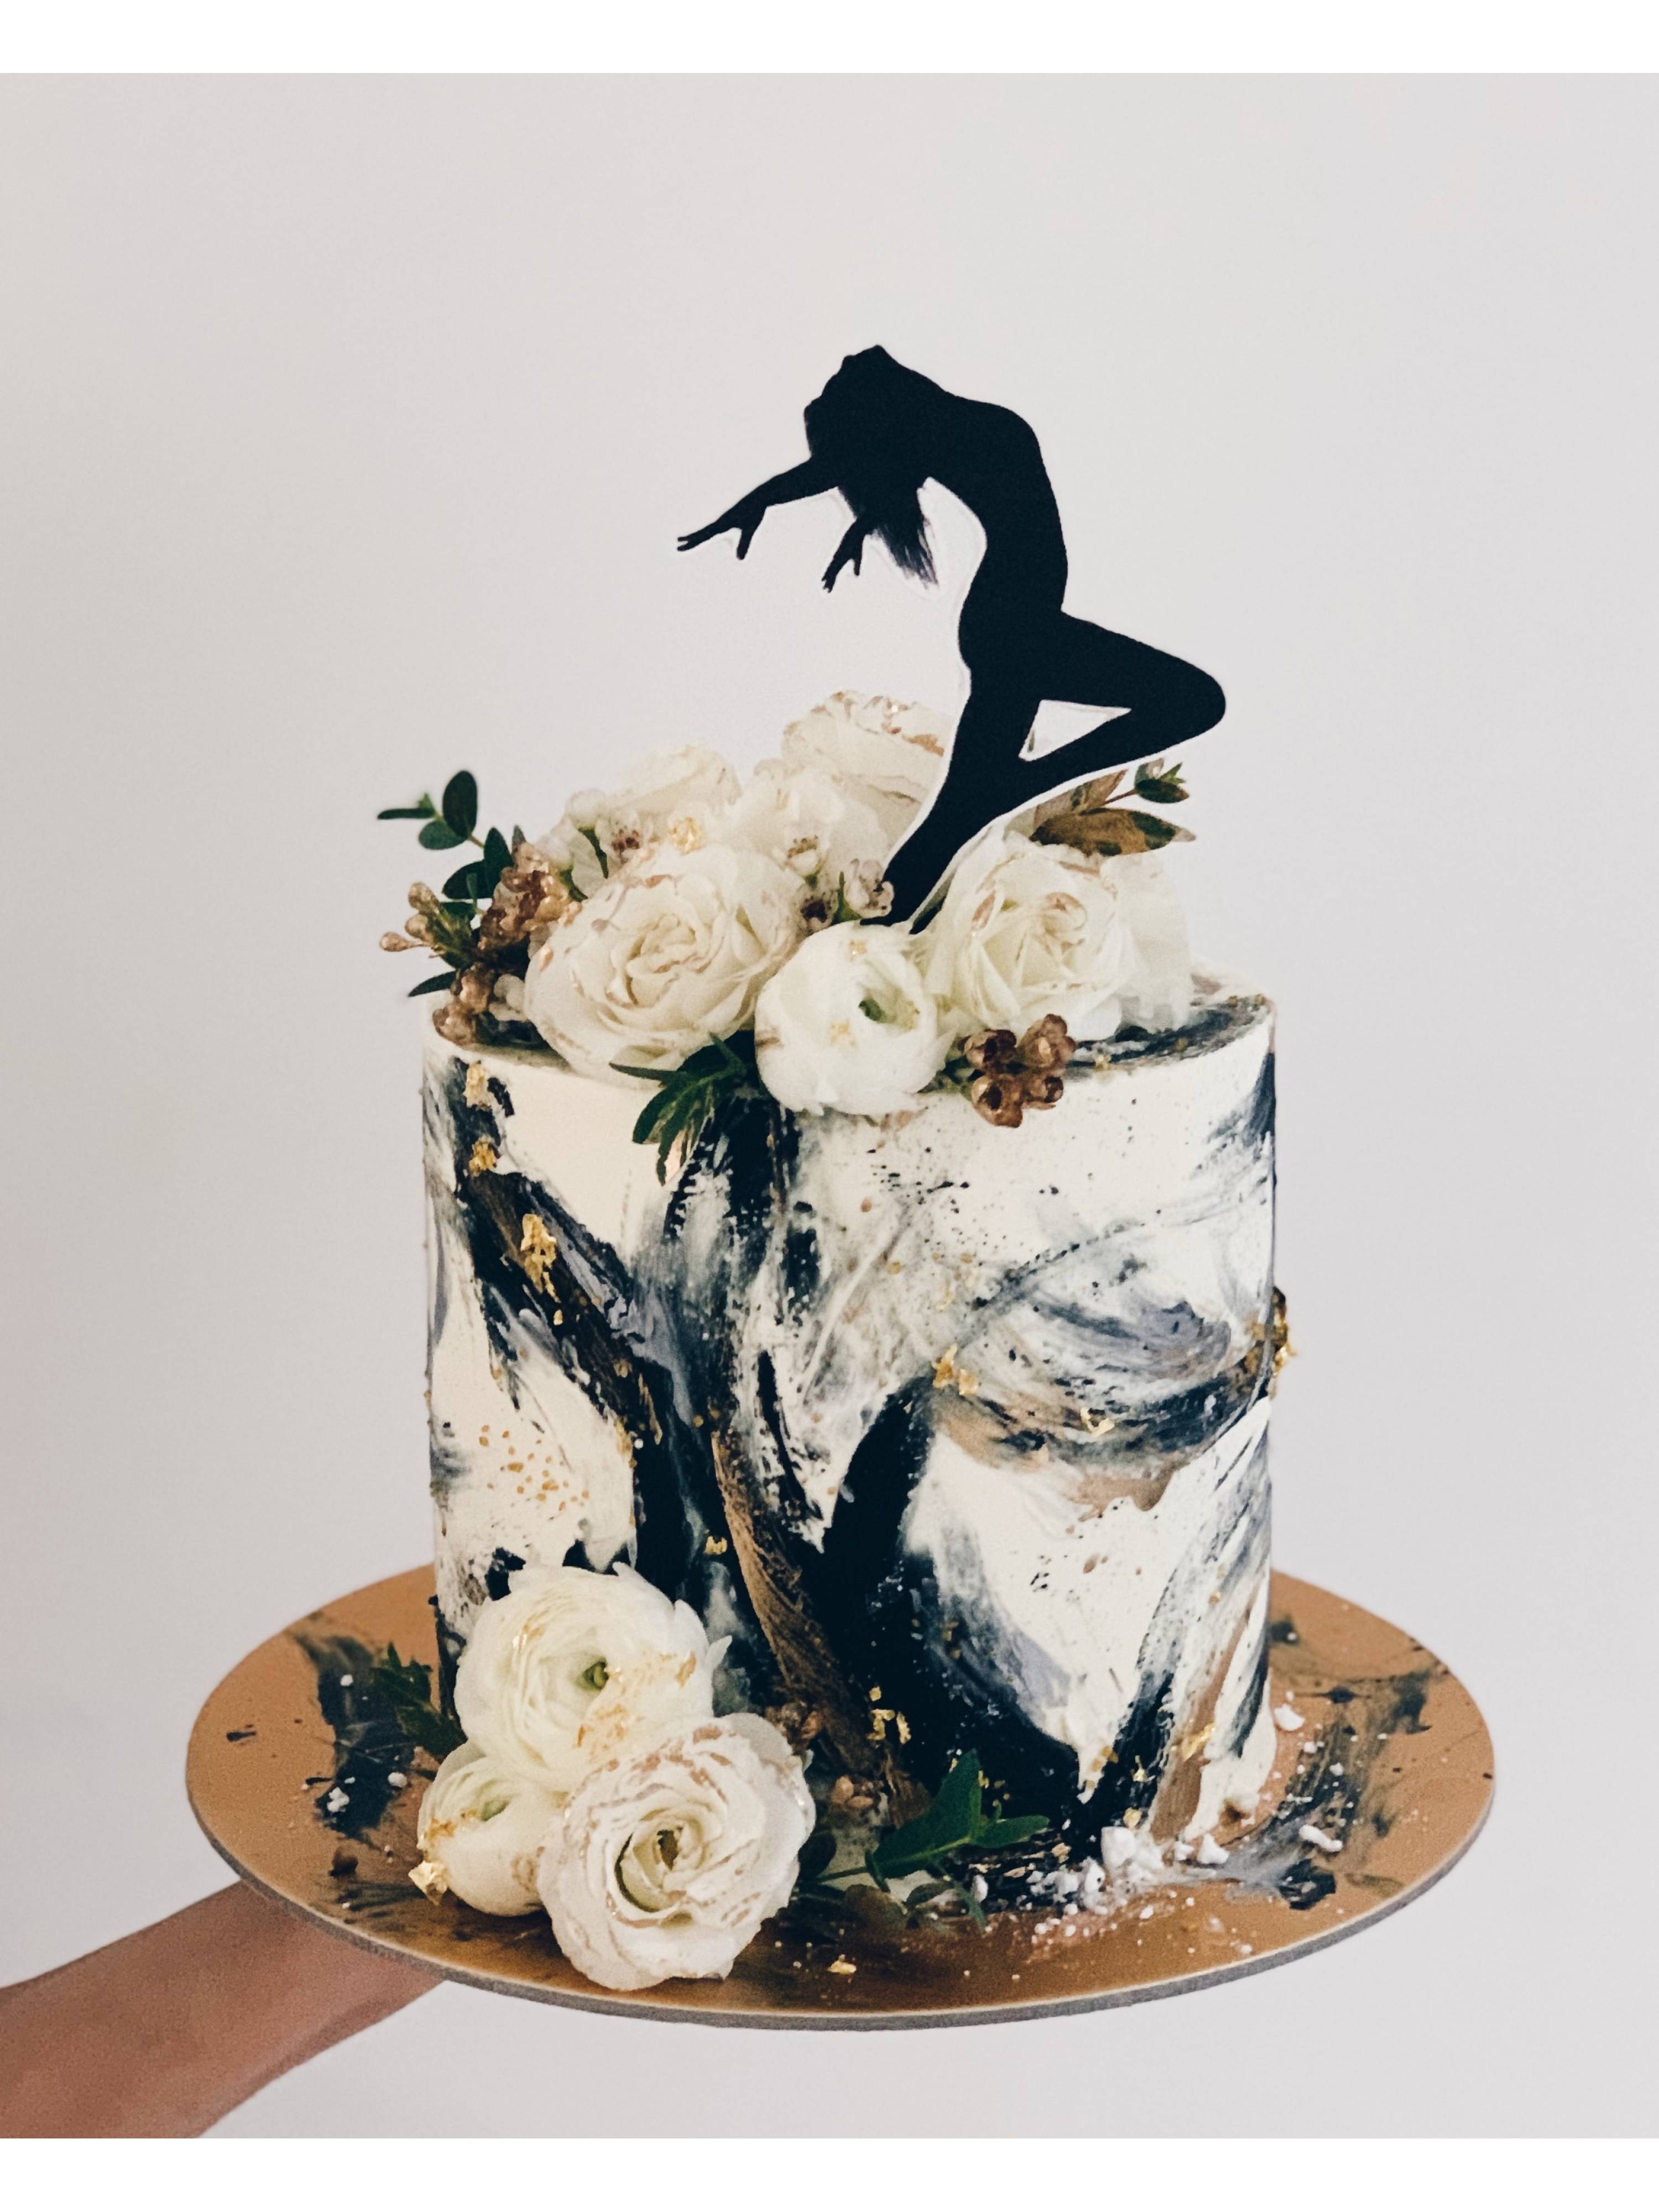 SP9. Contemporary Dancer Cake